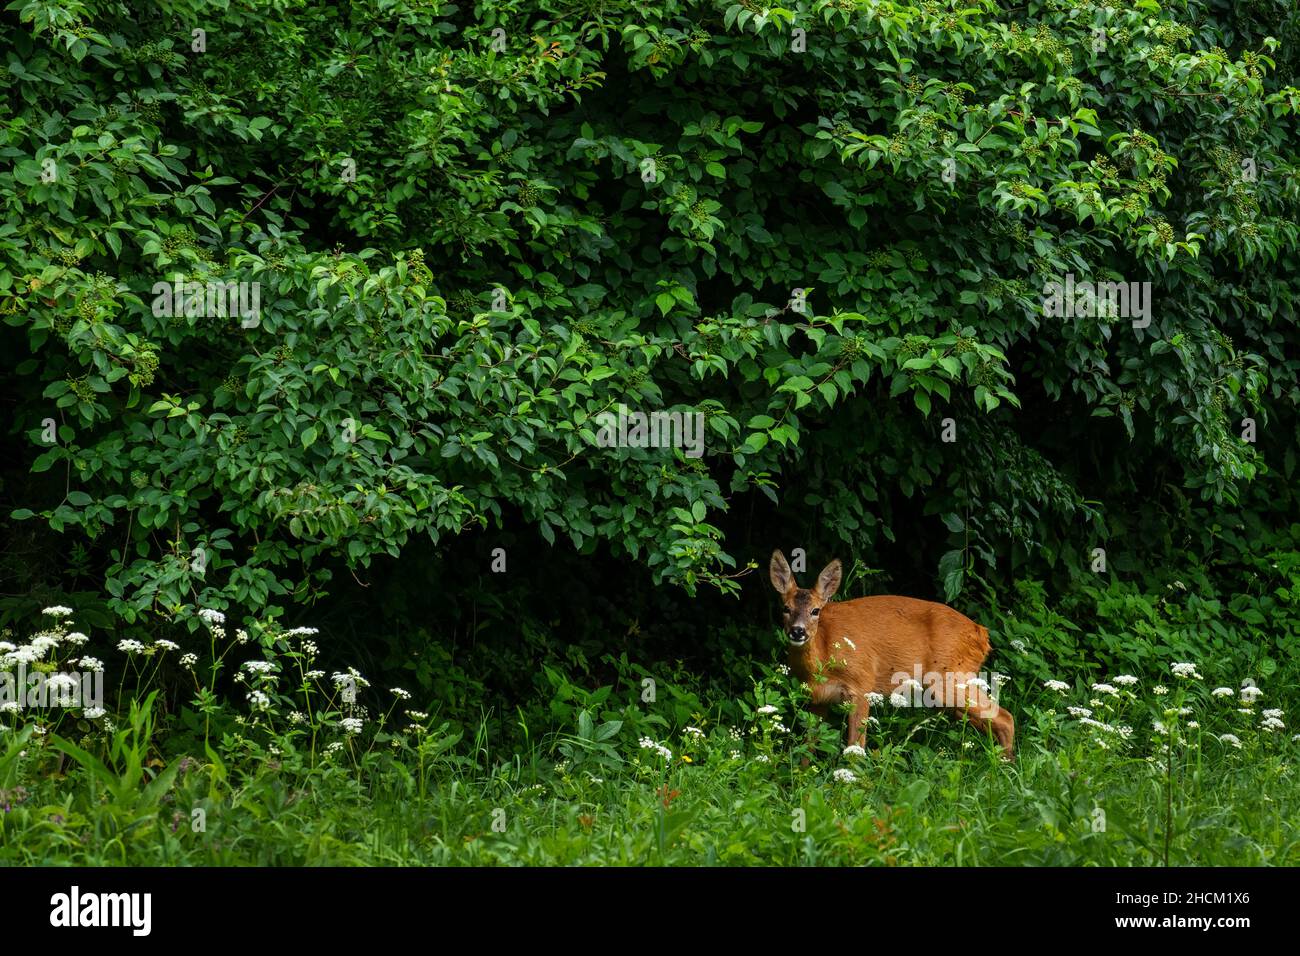 Ciervo Europeo de Roe - Capreolus capreolus, ciervo común de bosques europeos, bosques y prados, Stramberk, República Checa. Foto de stock